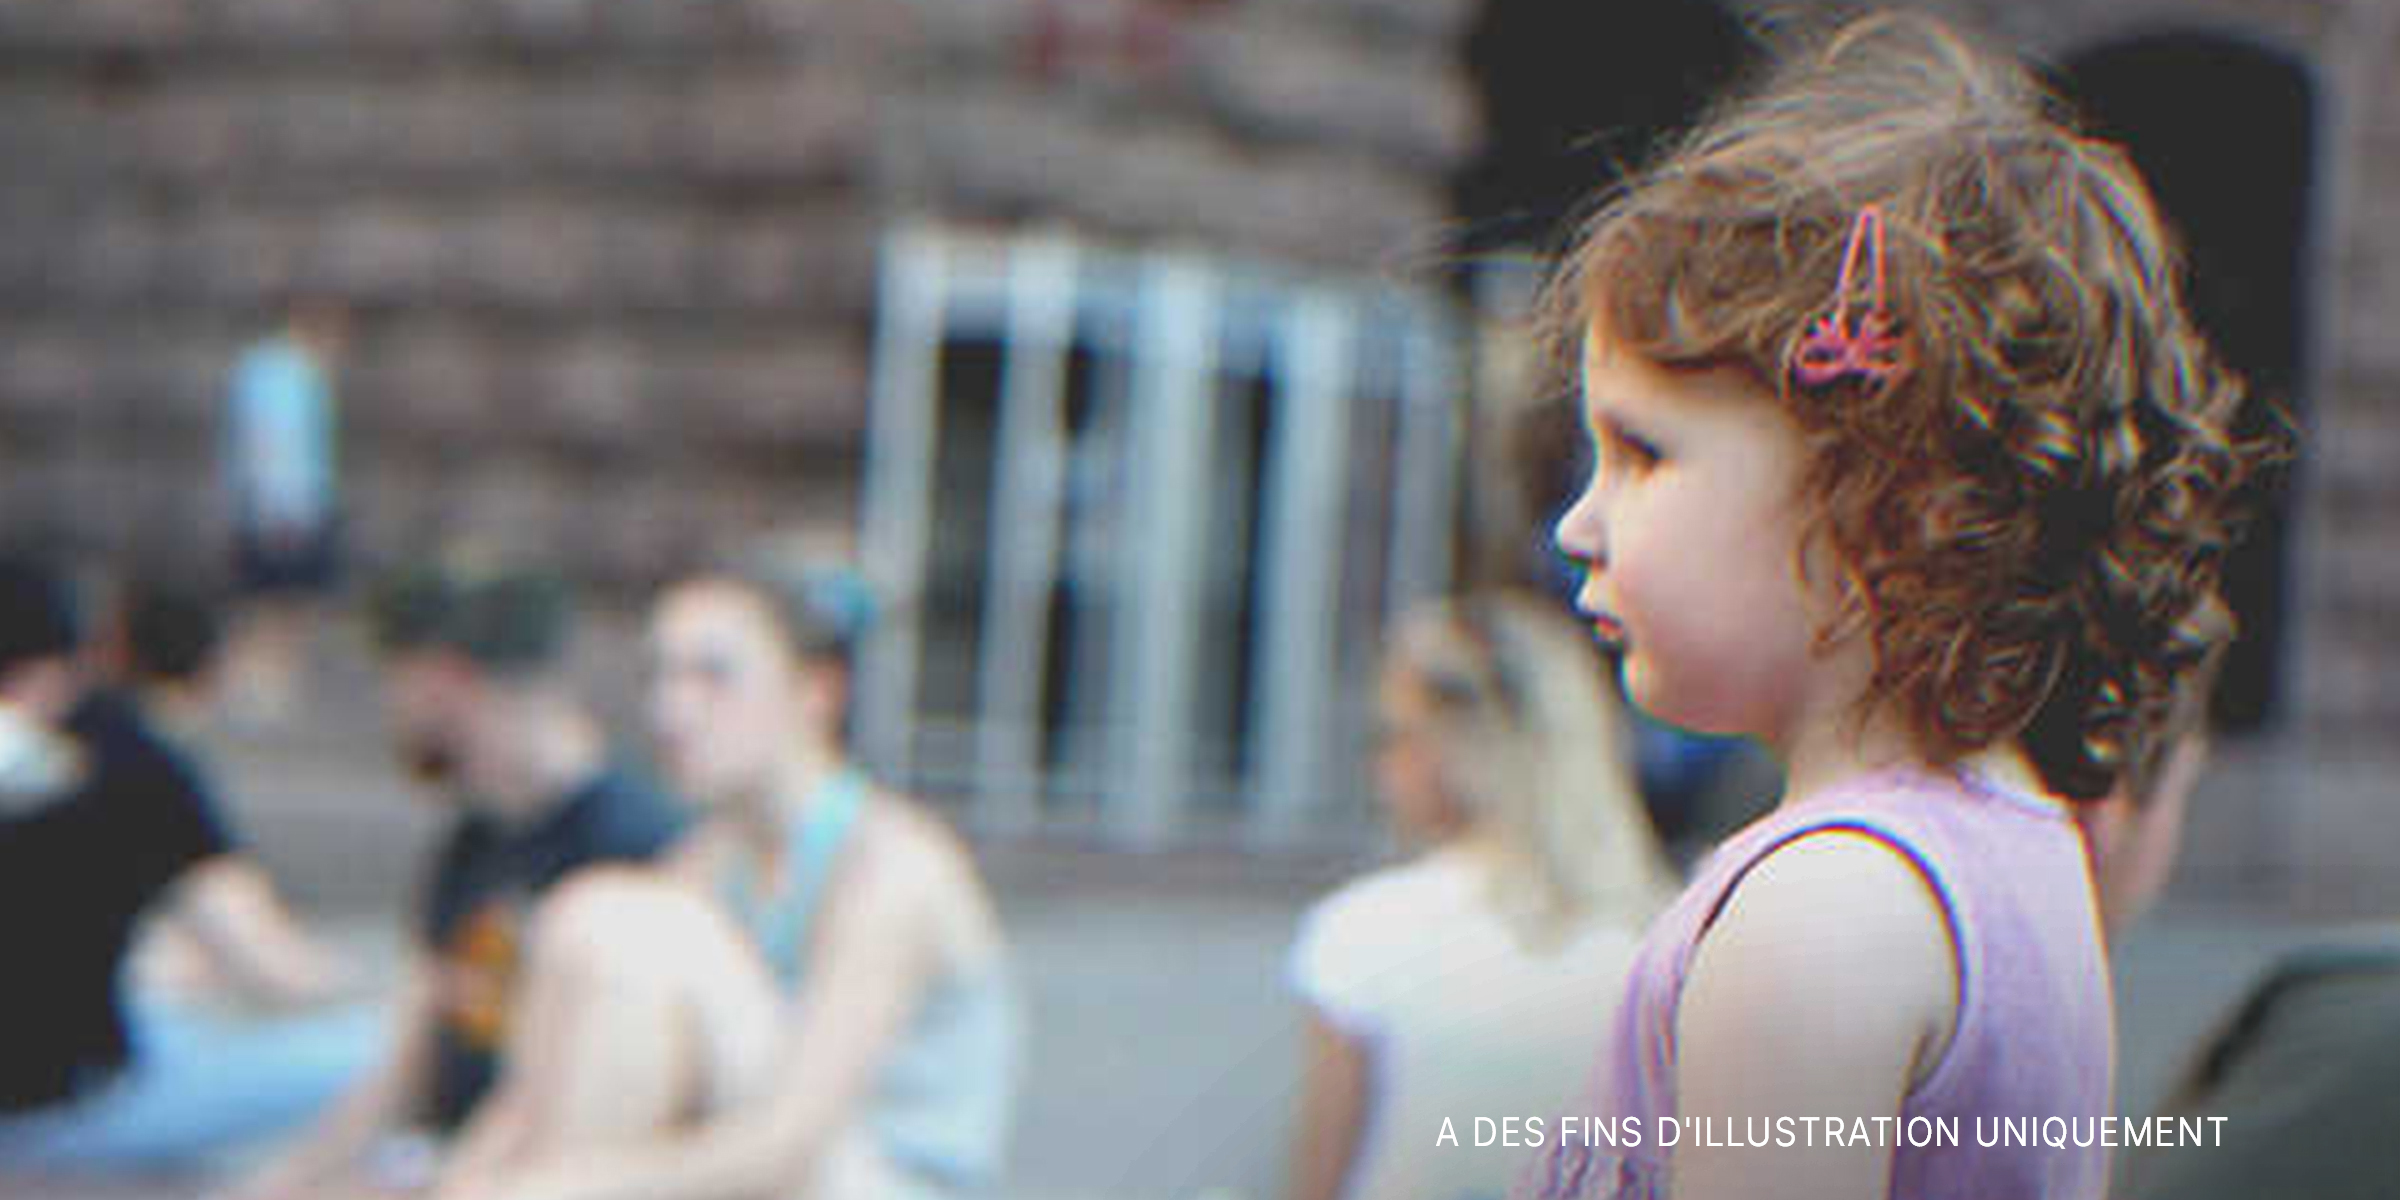 Une petite fille | Source : Flickr / Roman Harak